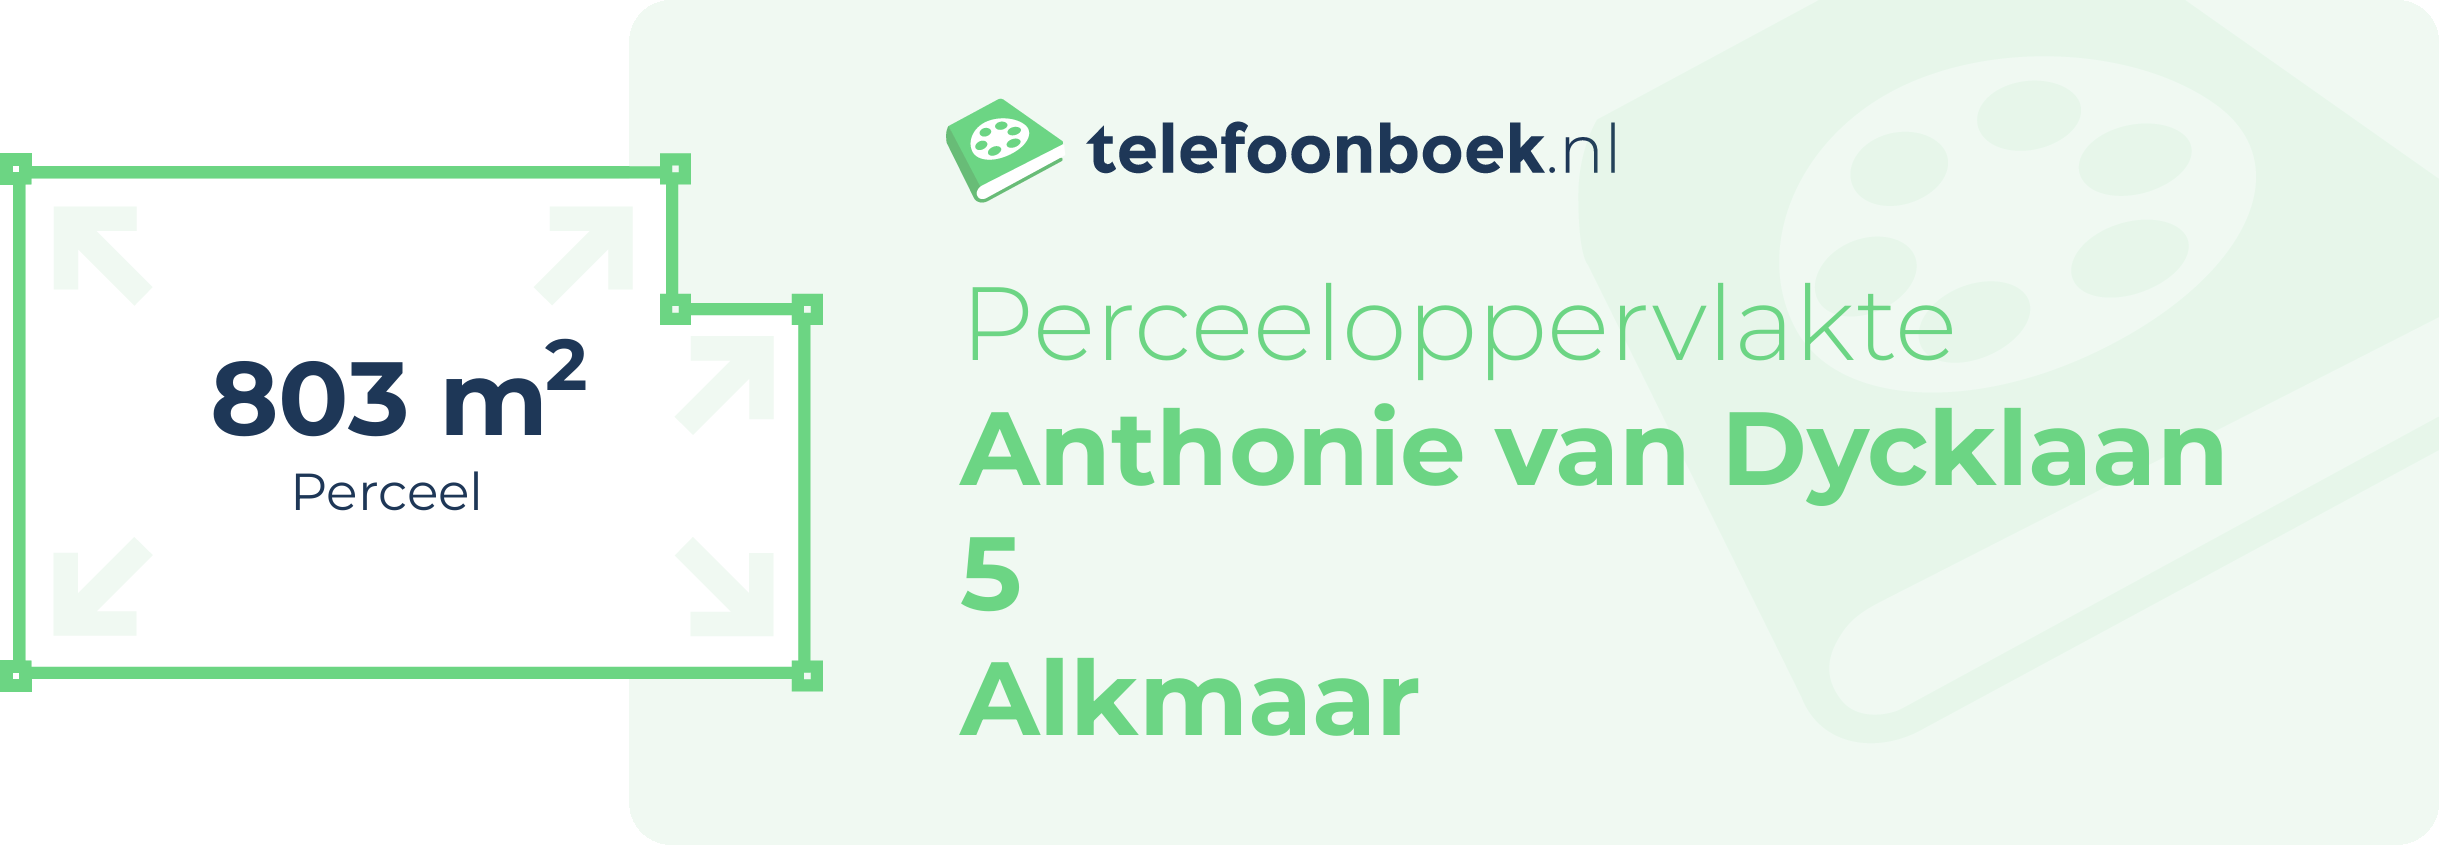 Perceeloppervlakte Anthonie Van Dycklaan 5 Alkmaar